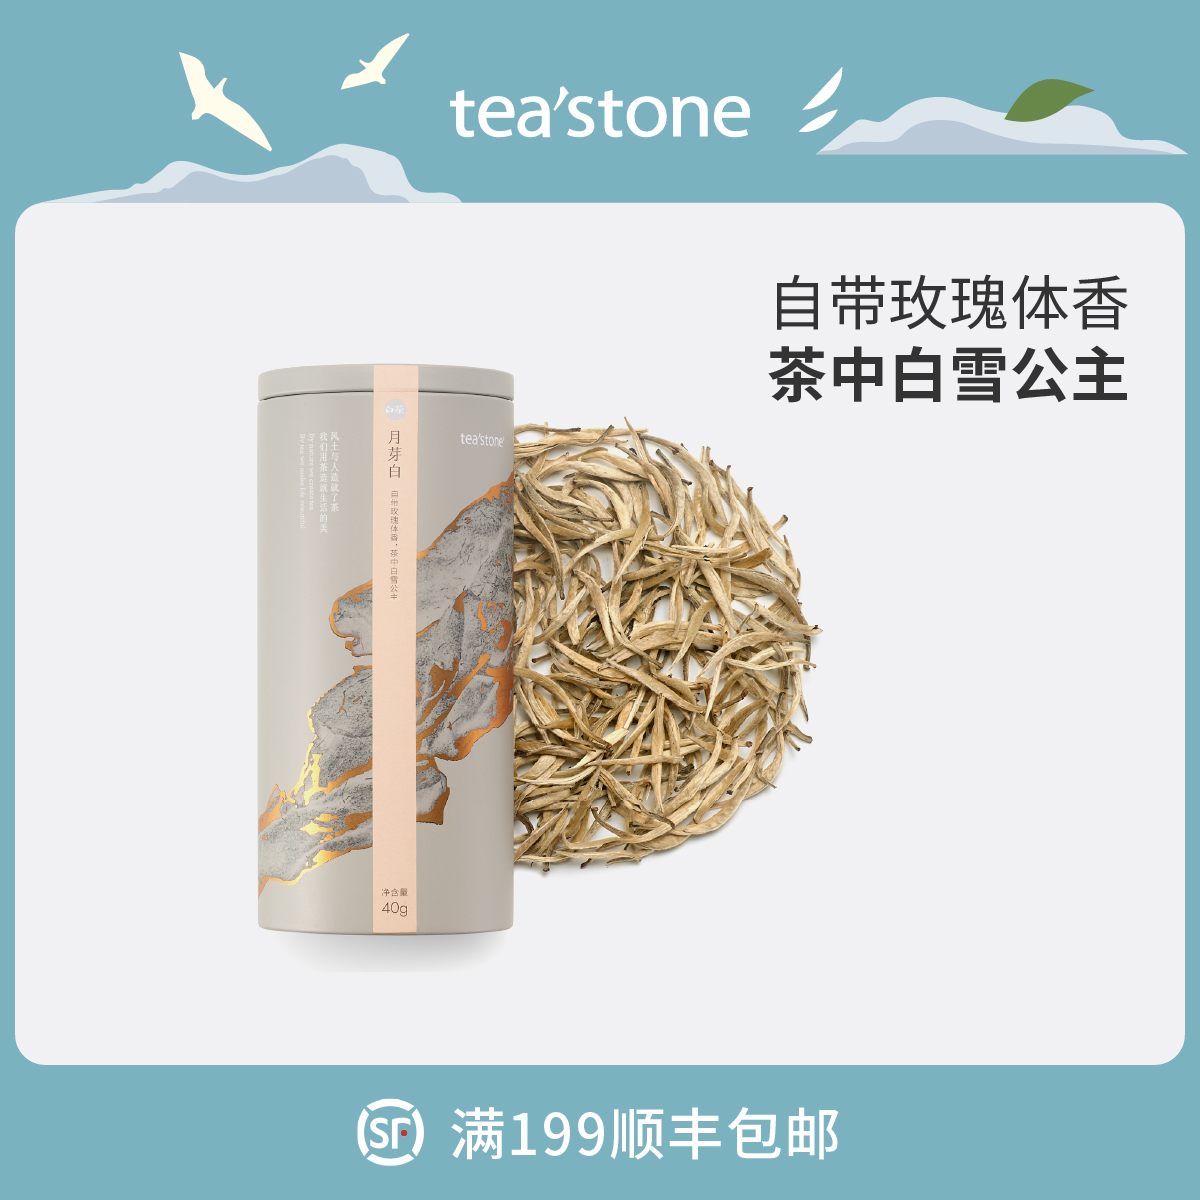 teastone月芽白初春白毫顶芽月光白茶清香型茶叶散茶锦罐40克